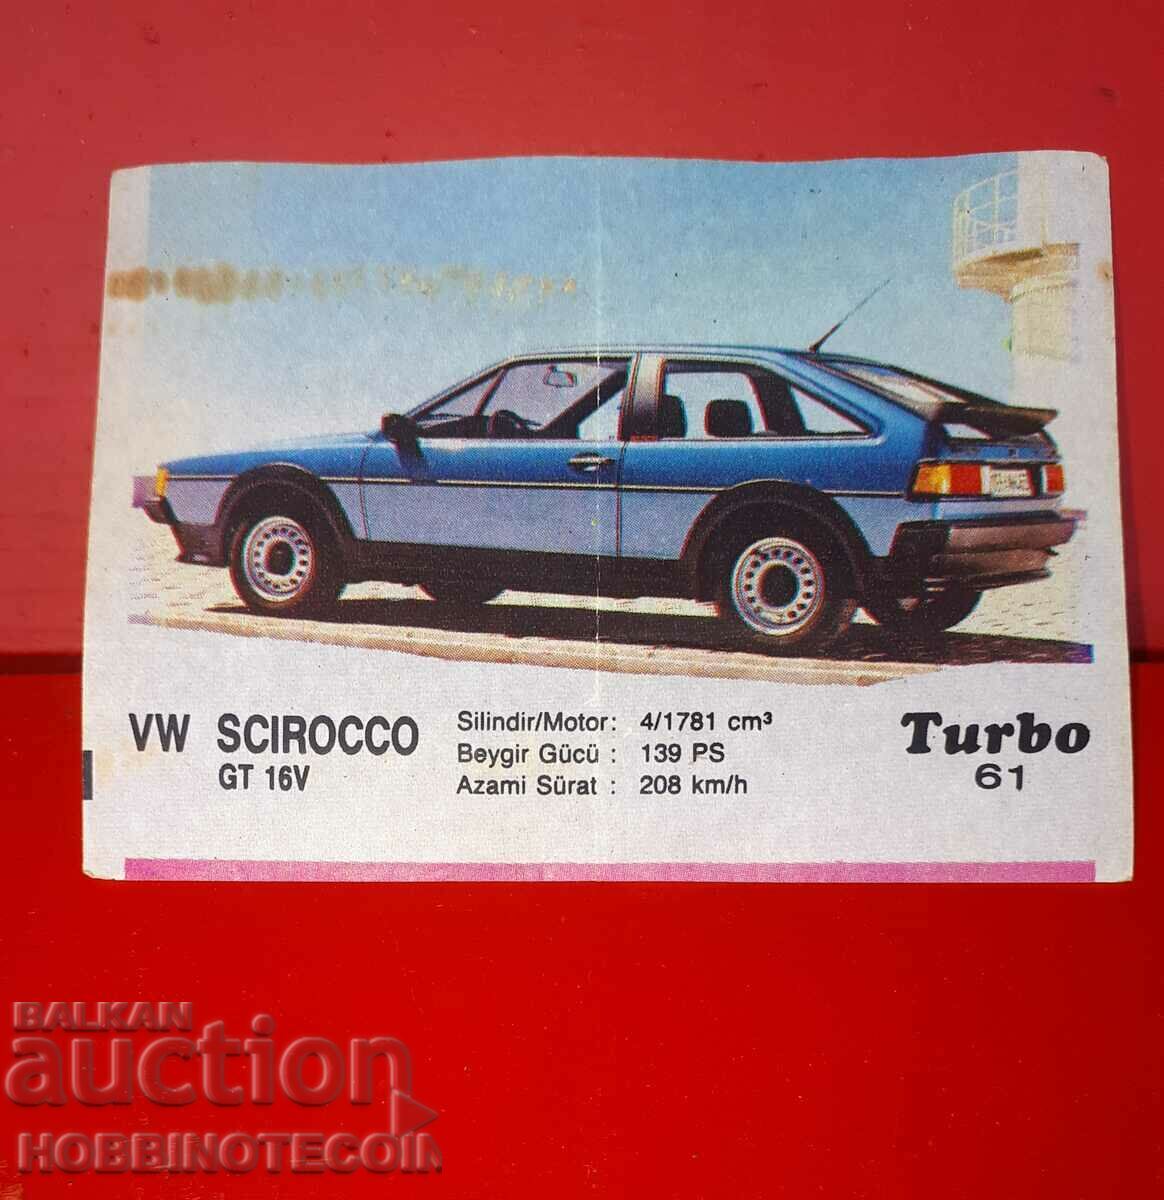 КАРТИНКА ТУРБО TURBO N 61 VW SCIROCCO GT 16V